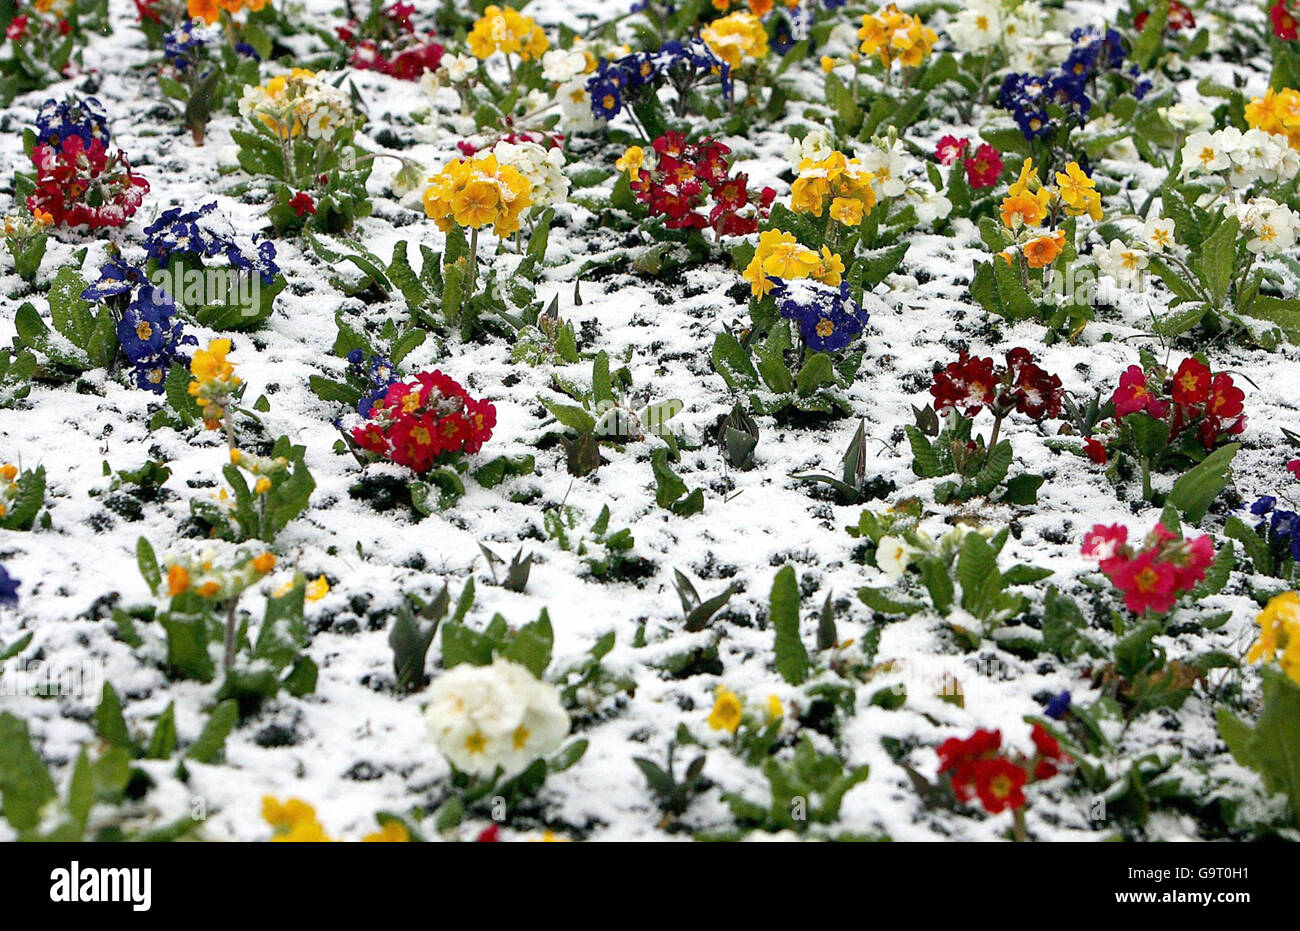 La primavera non è ancora arrivata perché i fiori sono coperti di neve a Whitley Bay, nel nord-est dell'Inghilterra. Foto Stock